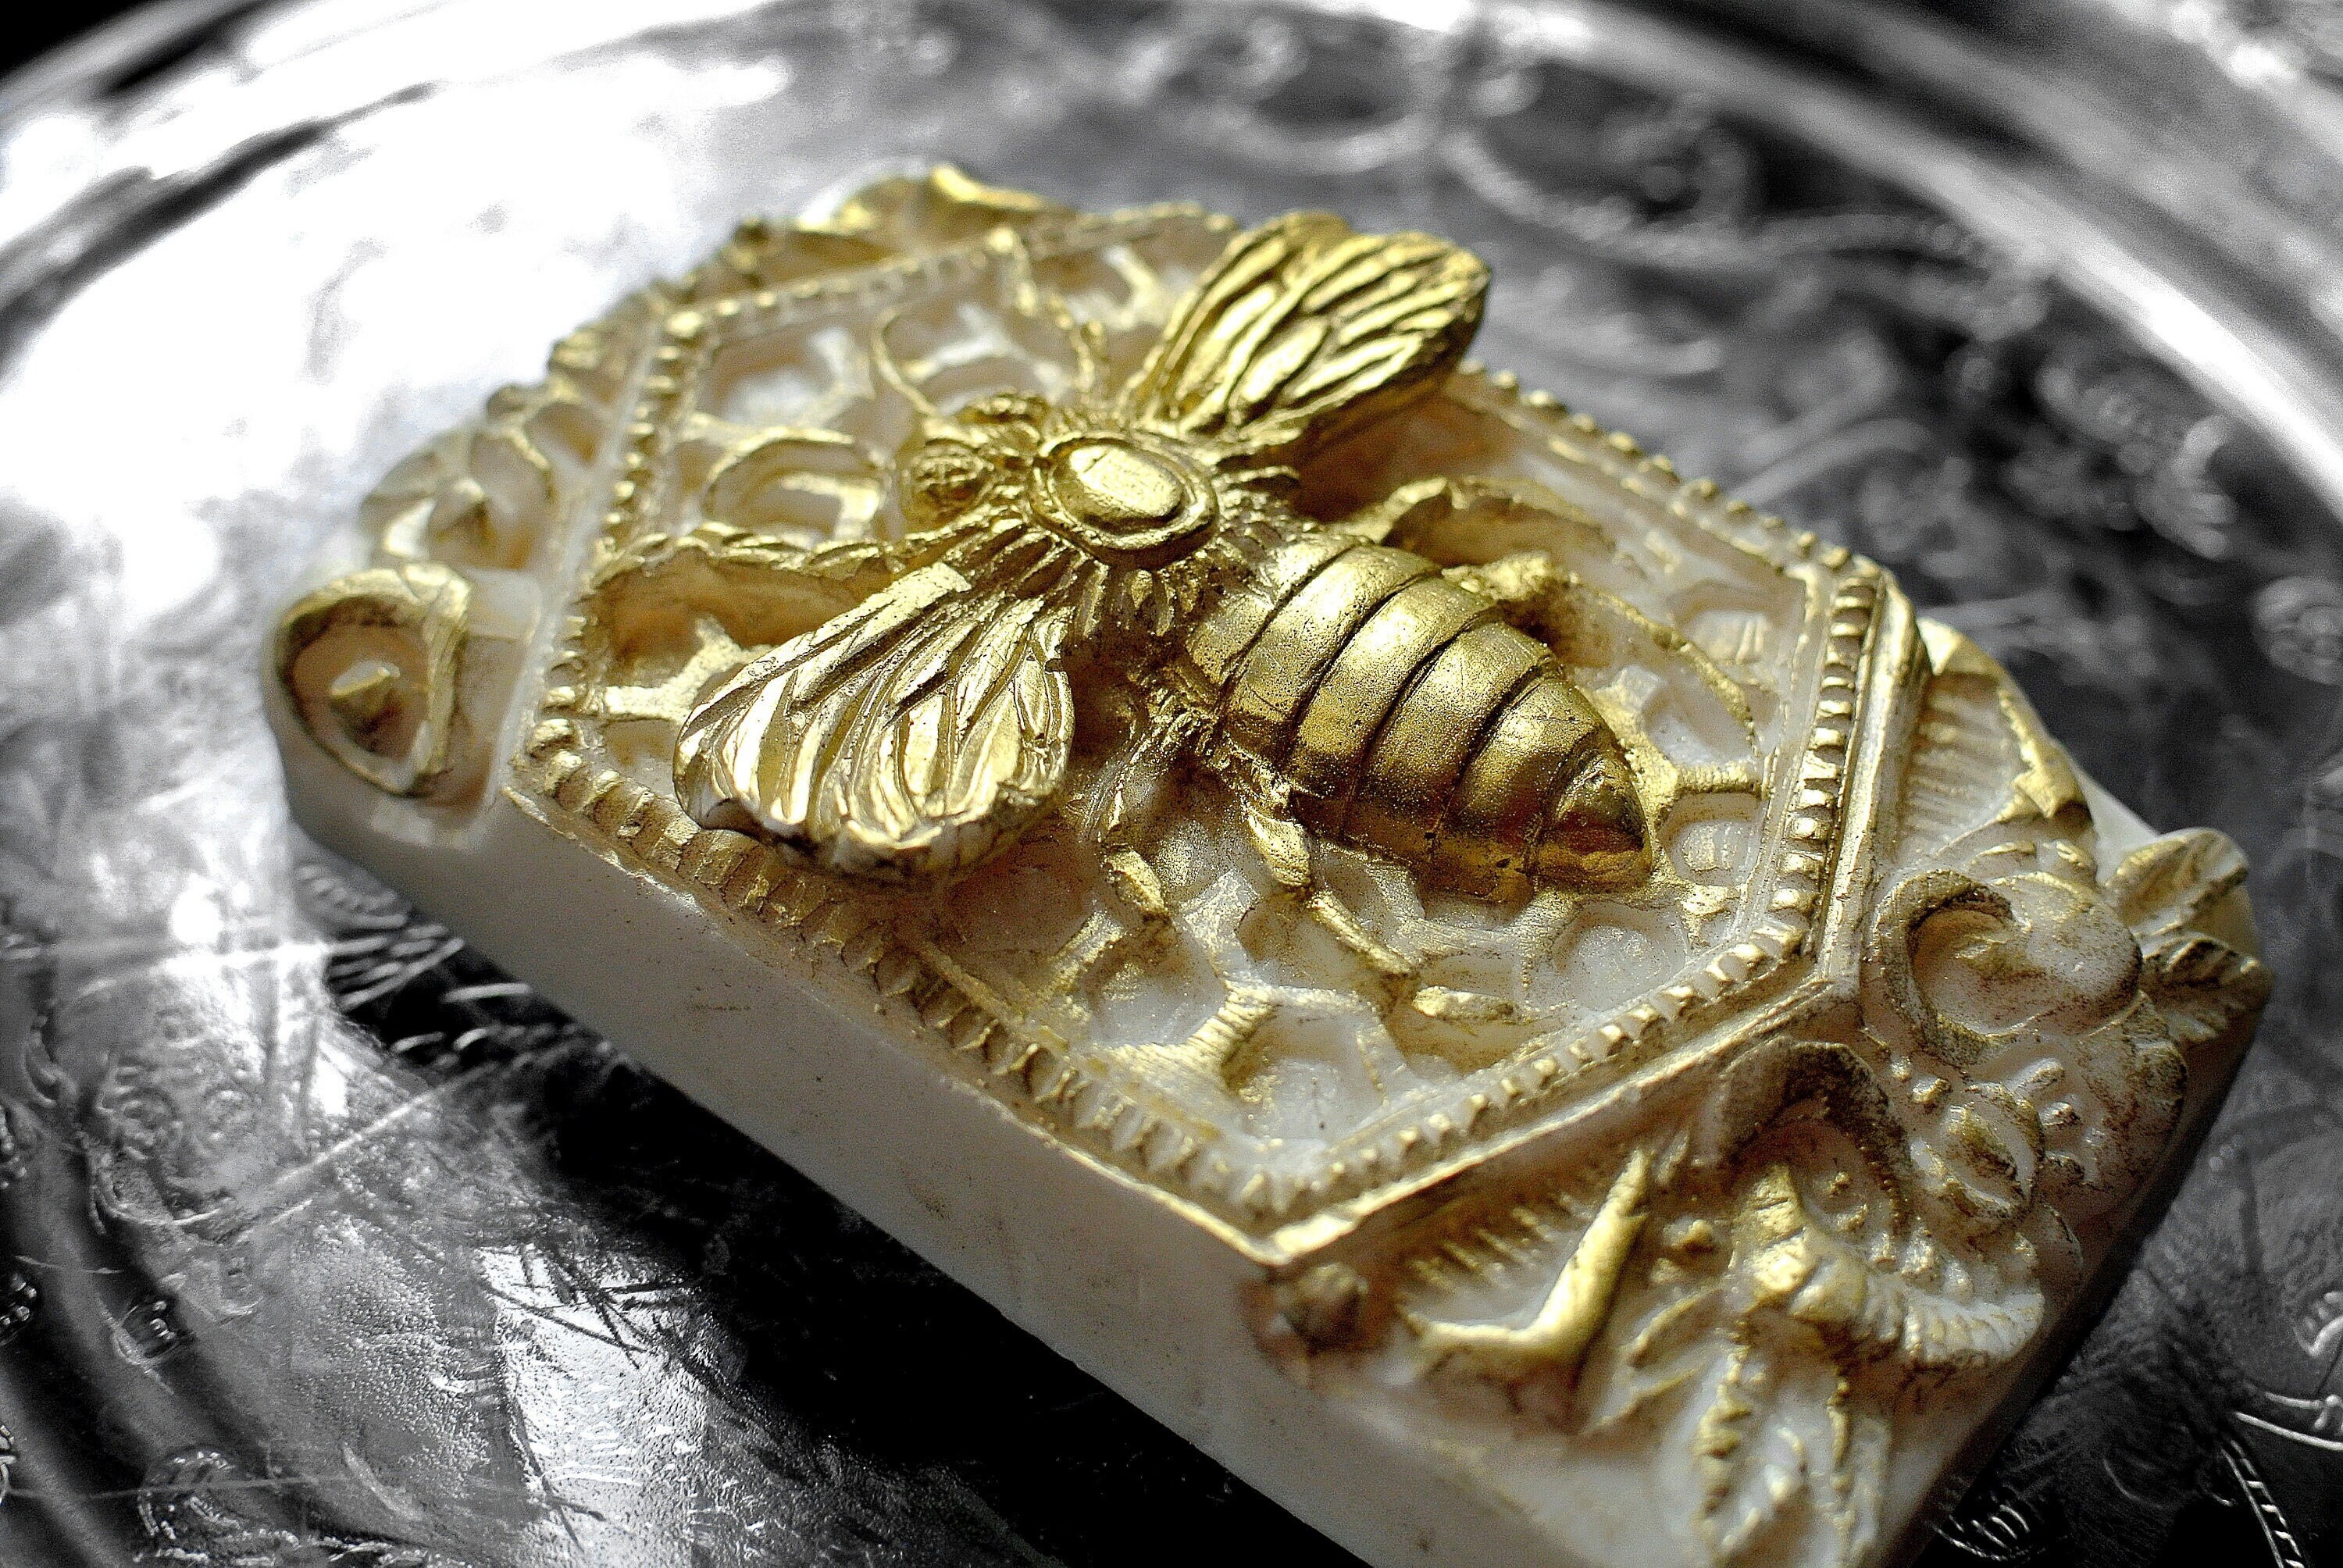 6 Cavity Honey Bee Silicone Soap Mold, Soap Making, Honey Comb